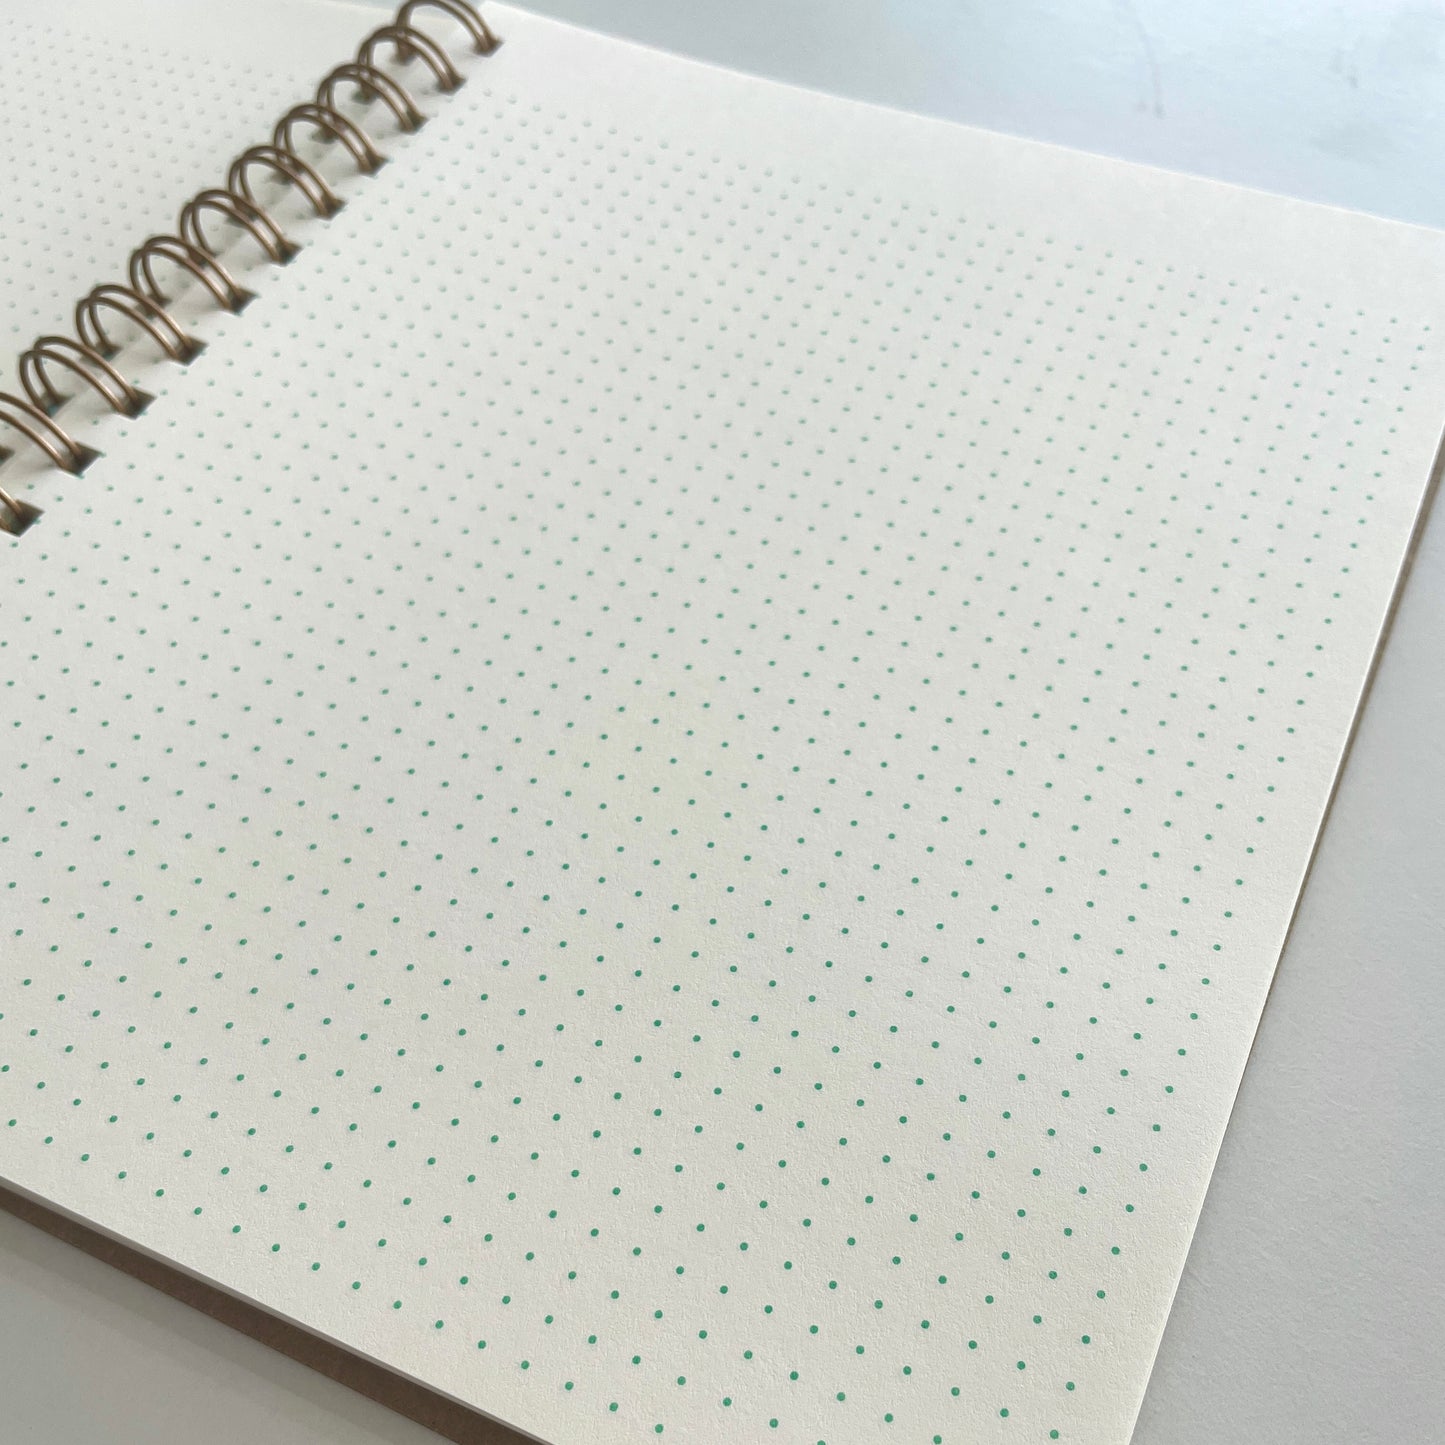 Spiral Dot Grid Notebook